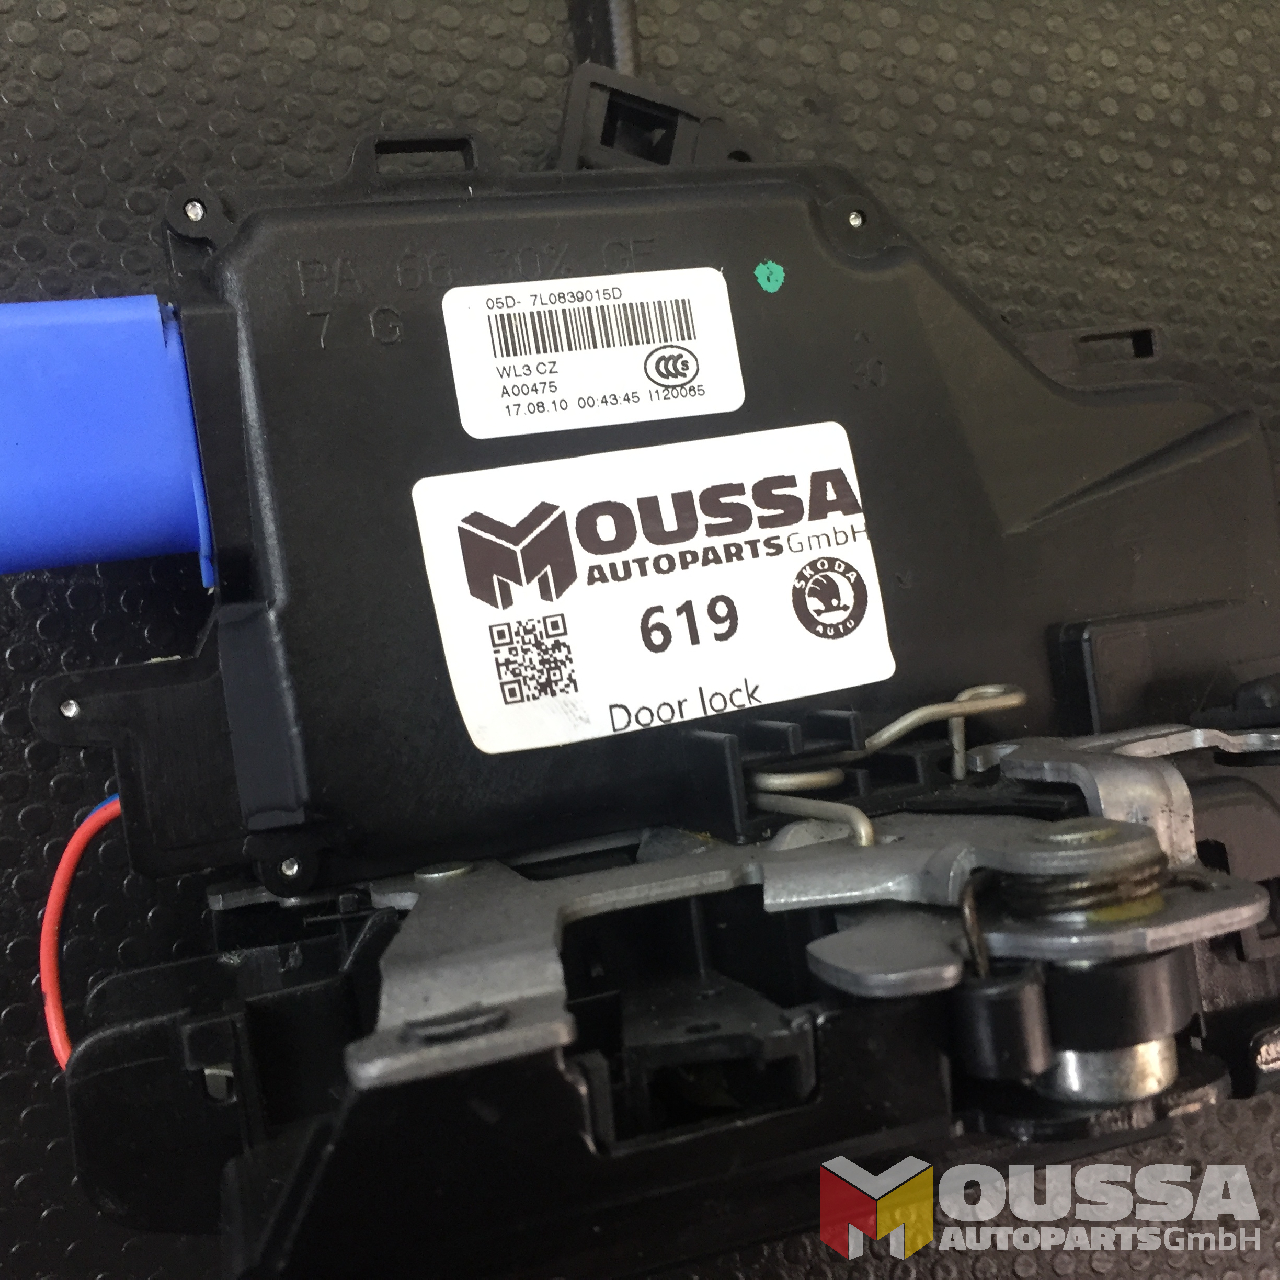 MOUSSA-AUTOPARTS-64bd46b35426d.jpg